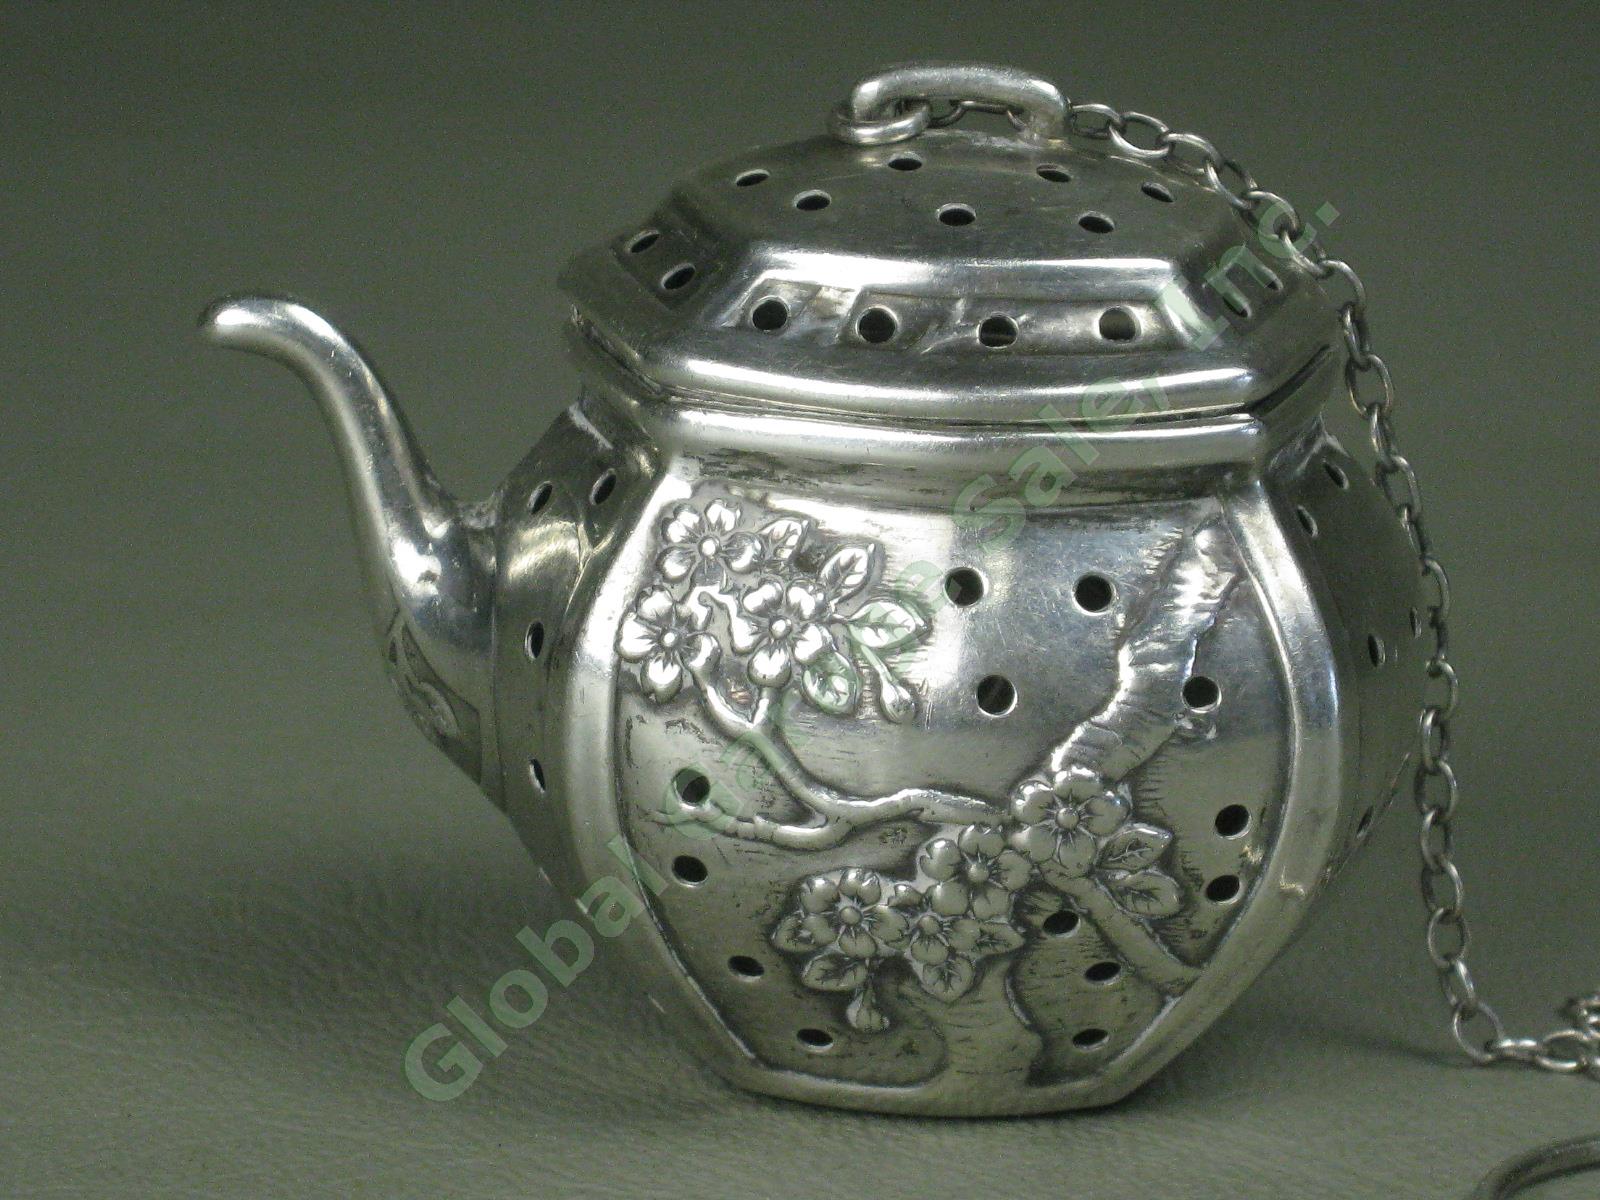 Vtg Antique Cartier Sterling Silver Teapot Tea Strainer Infuser Floral Designs 1